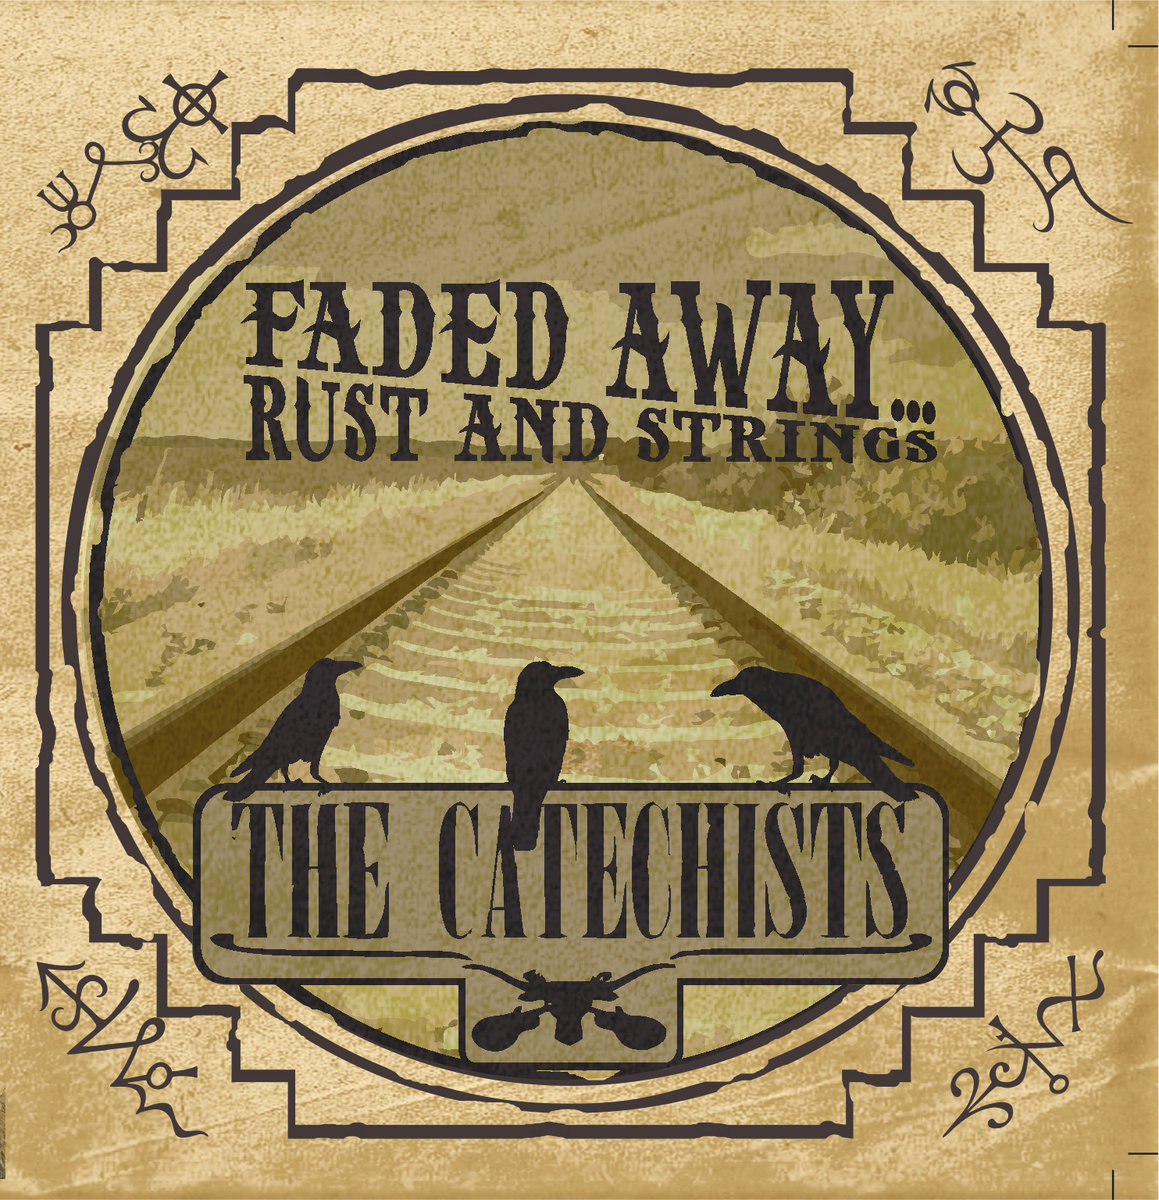 Il nuovo singolo dei The Catechists: il rock made in Italy che racconta un cupo far west